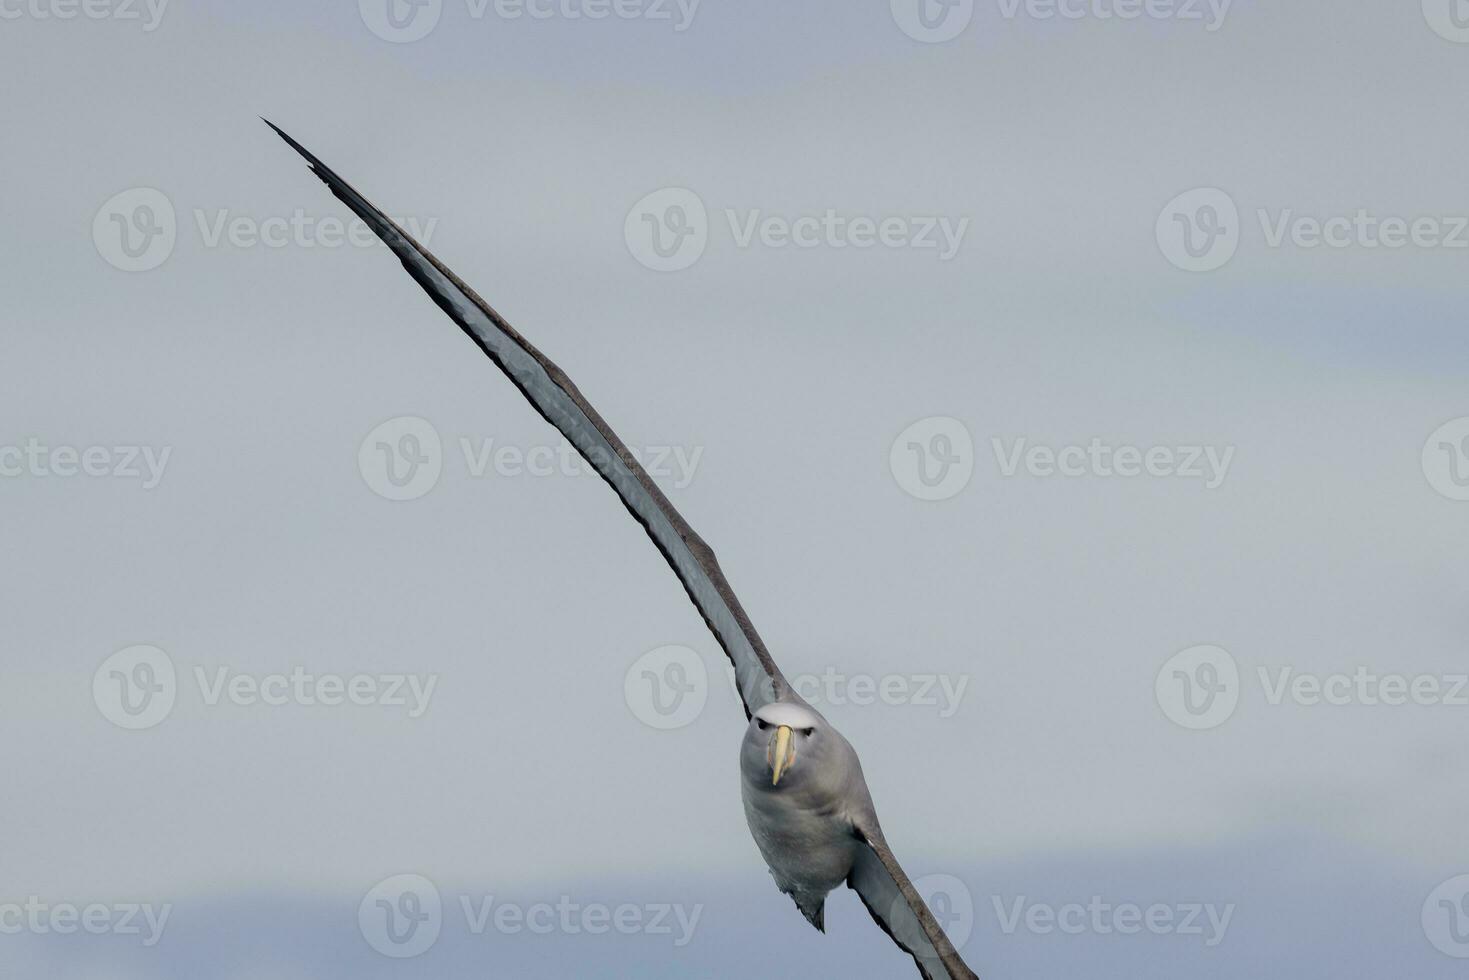 salvins mollymawk albatross foto